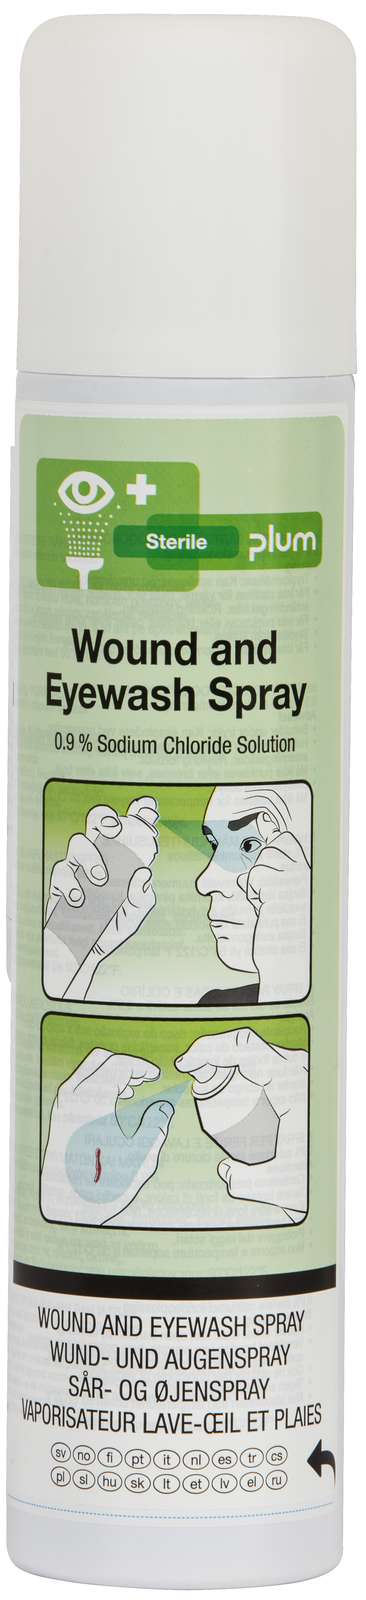 4554 Plum Wound and Eyewash Spray 250 ml 20231127